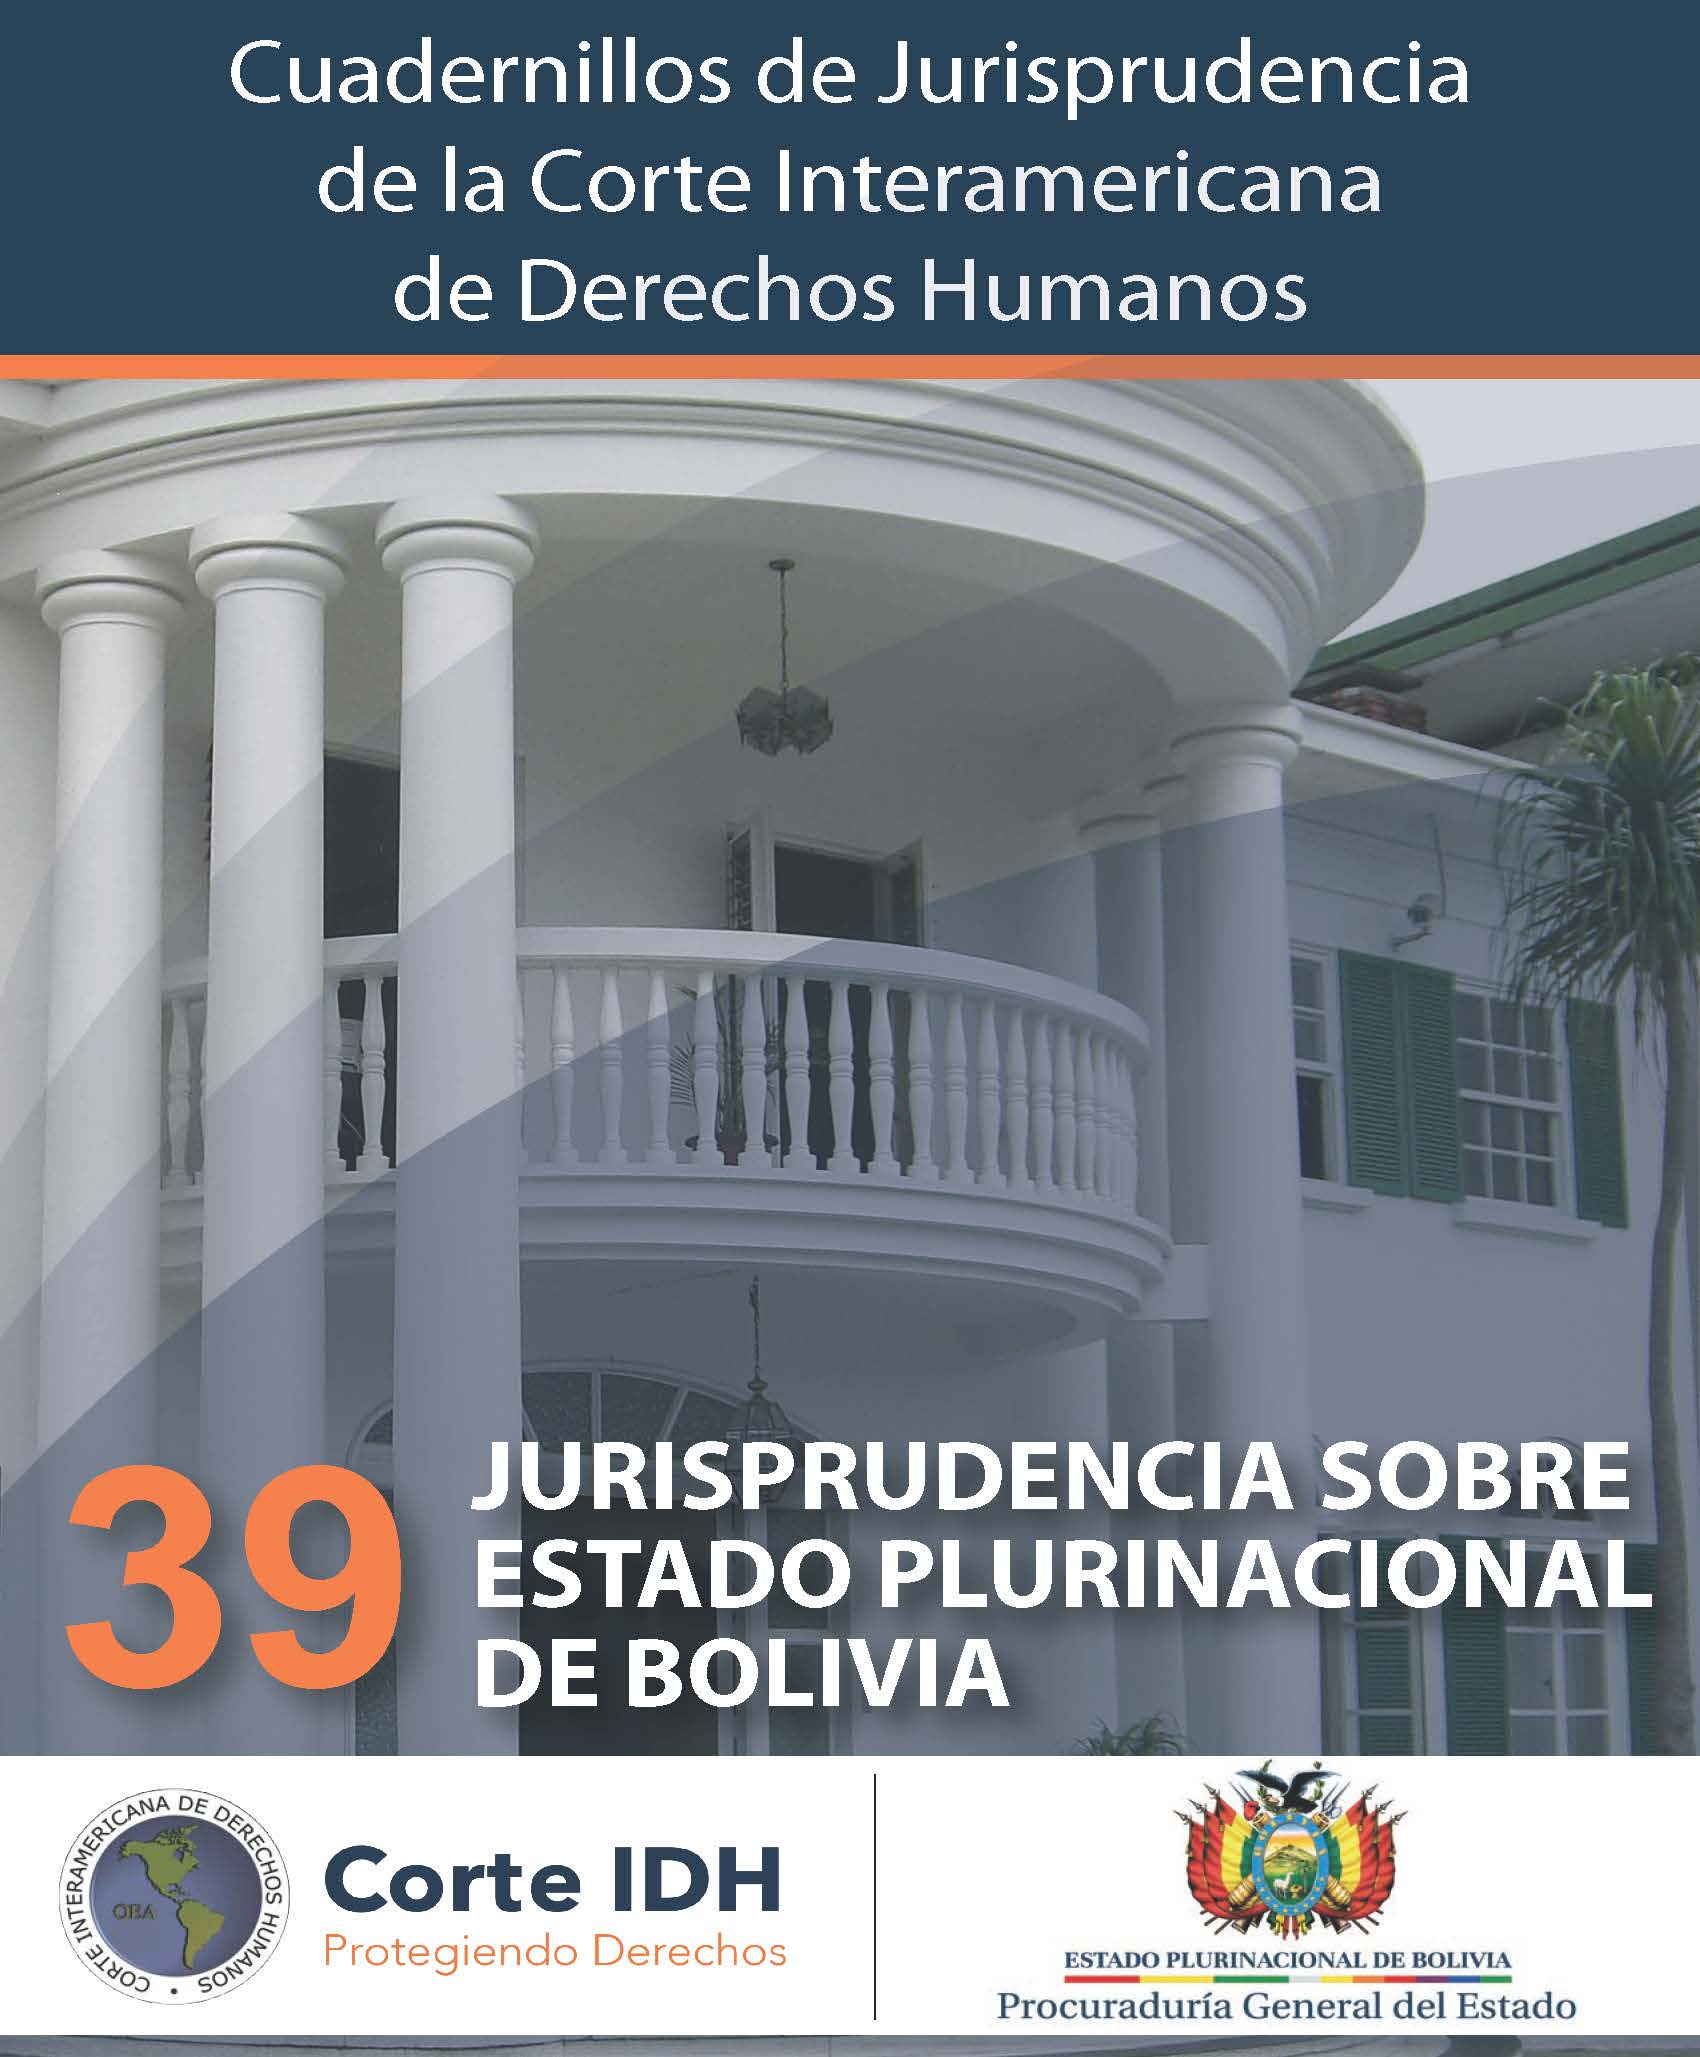 Cuadernillo de Jurisprudencia N° 39: Jurisprudencia sobre el Estado Plurinacional de Bolivia